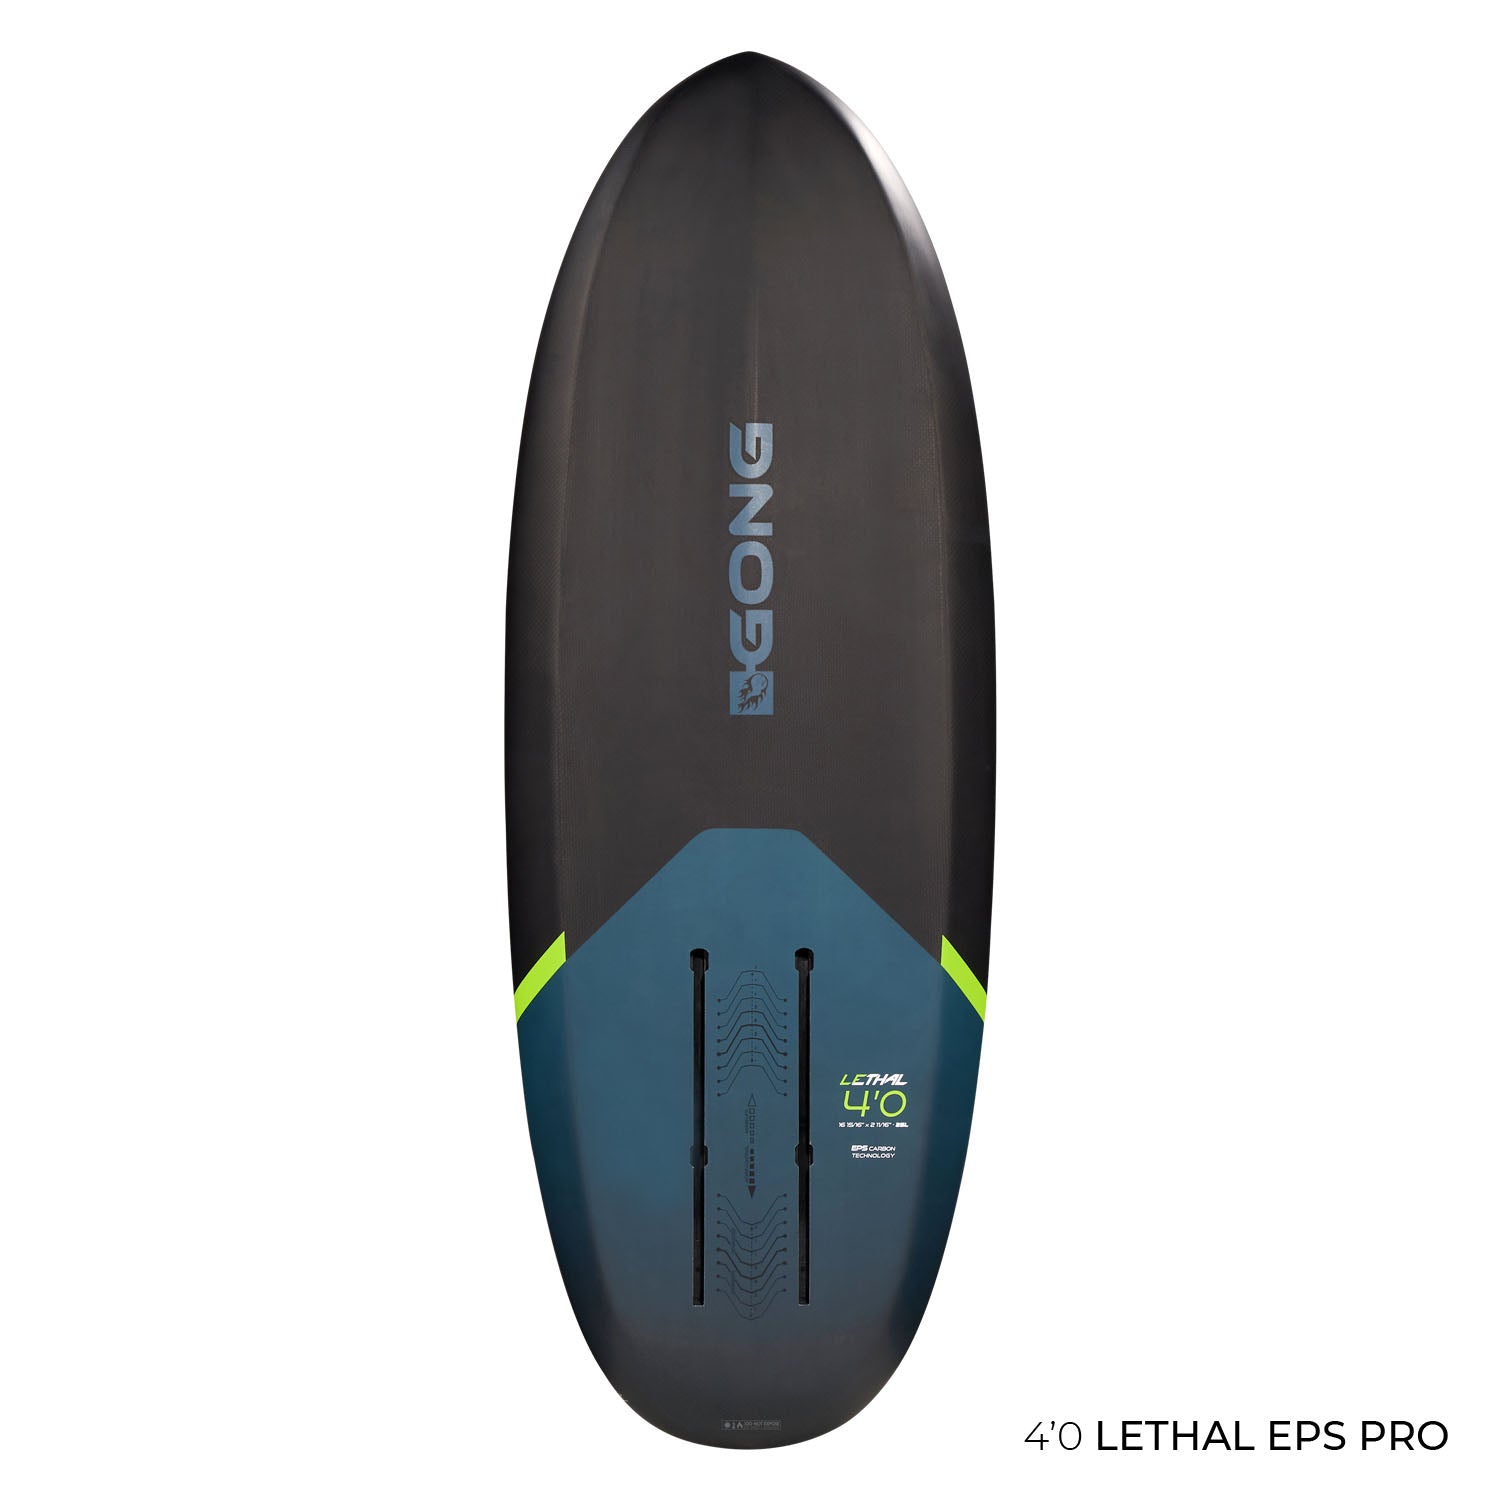 GONG | Surf Foil Board Lethal EPS Pro